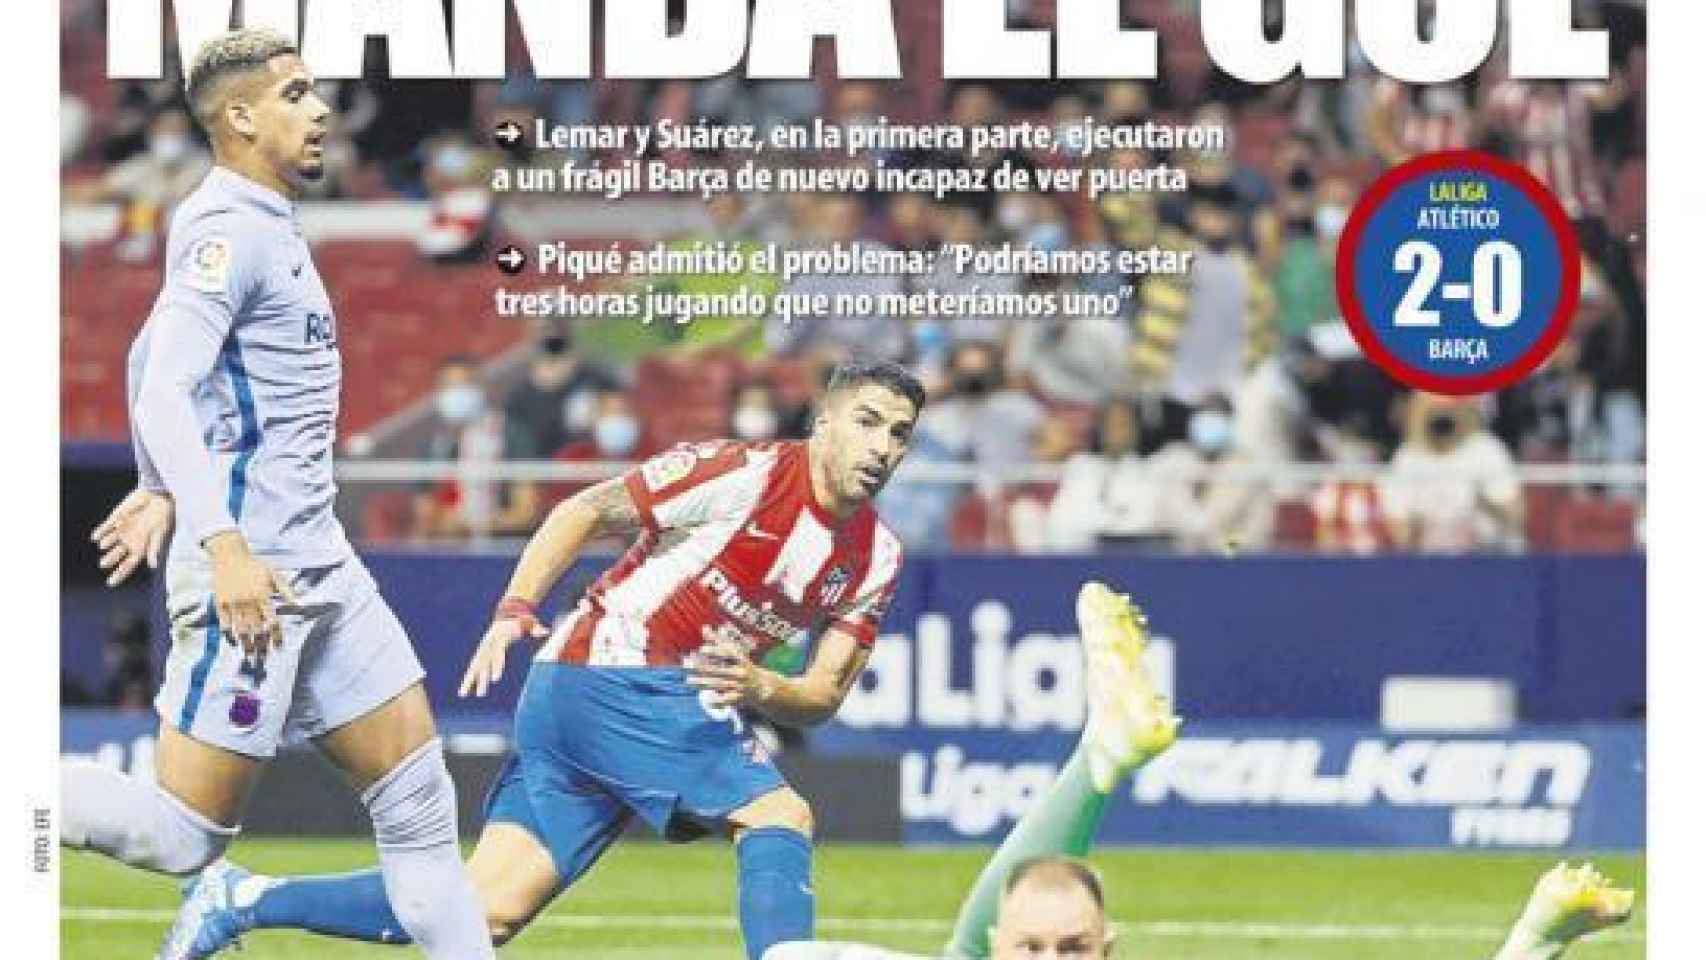 La portada del diario Mundo Deportivo (03/10/2021)